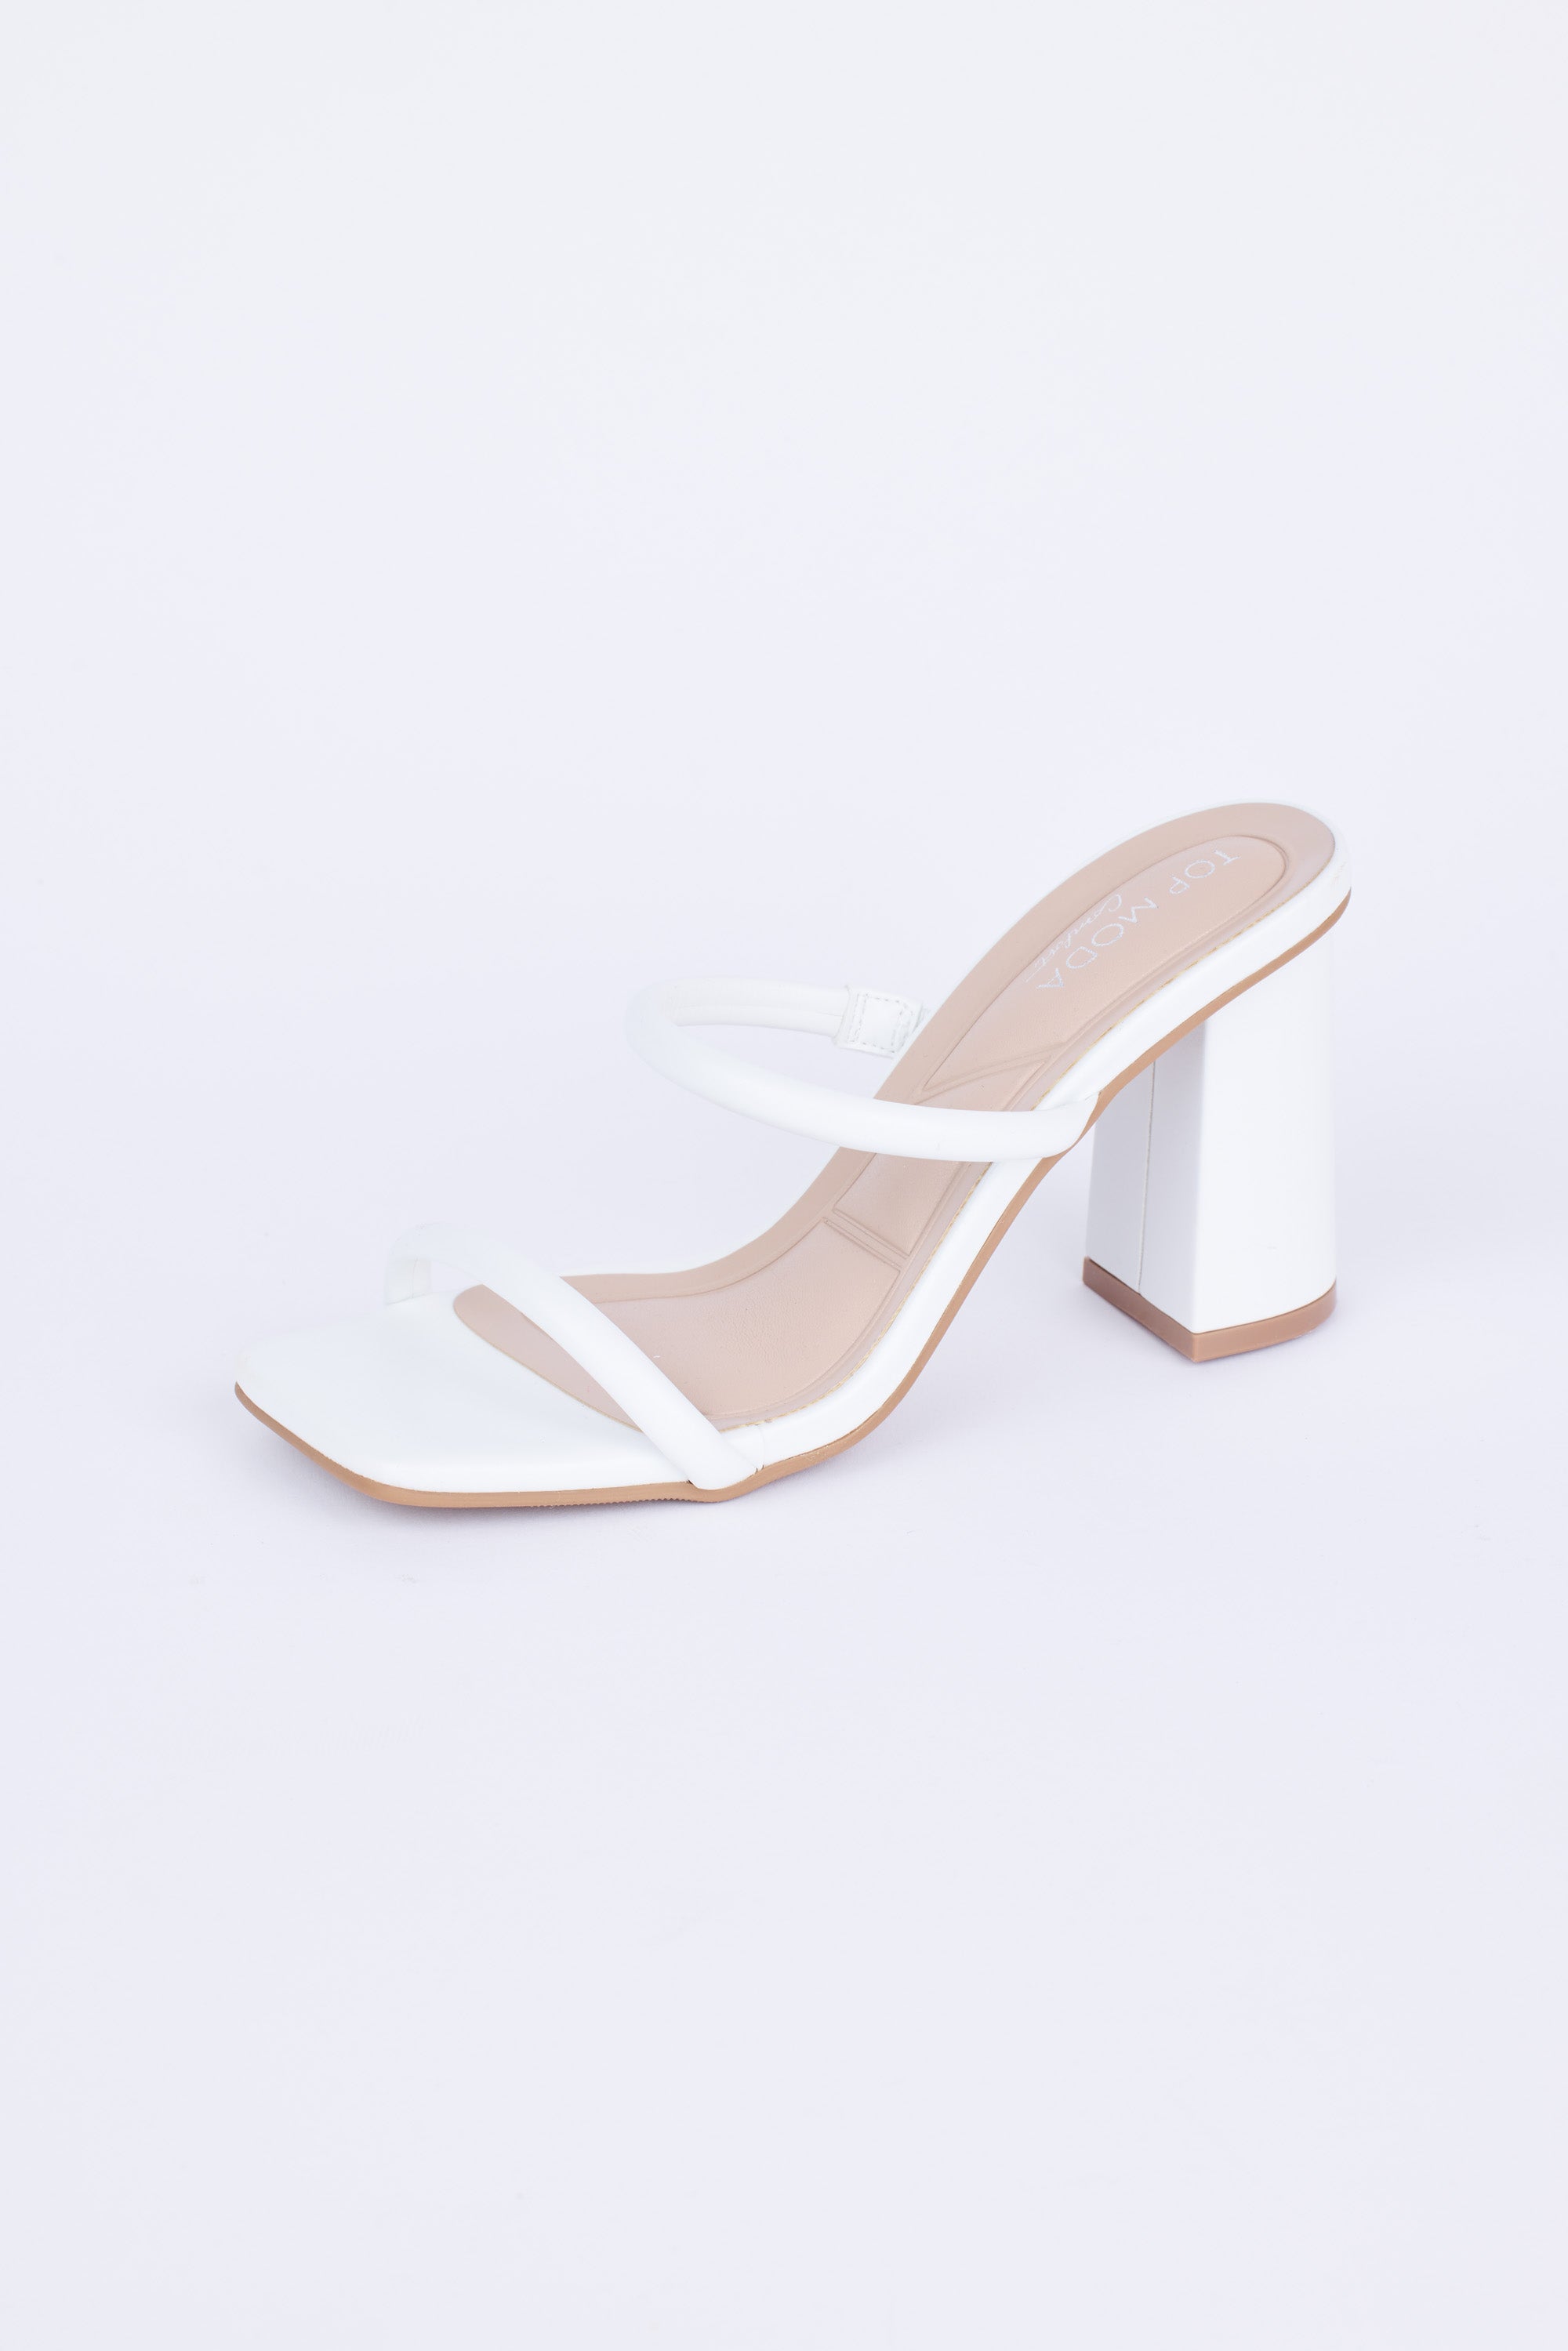 Kayce Heels- White